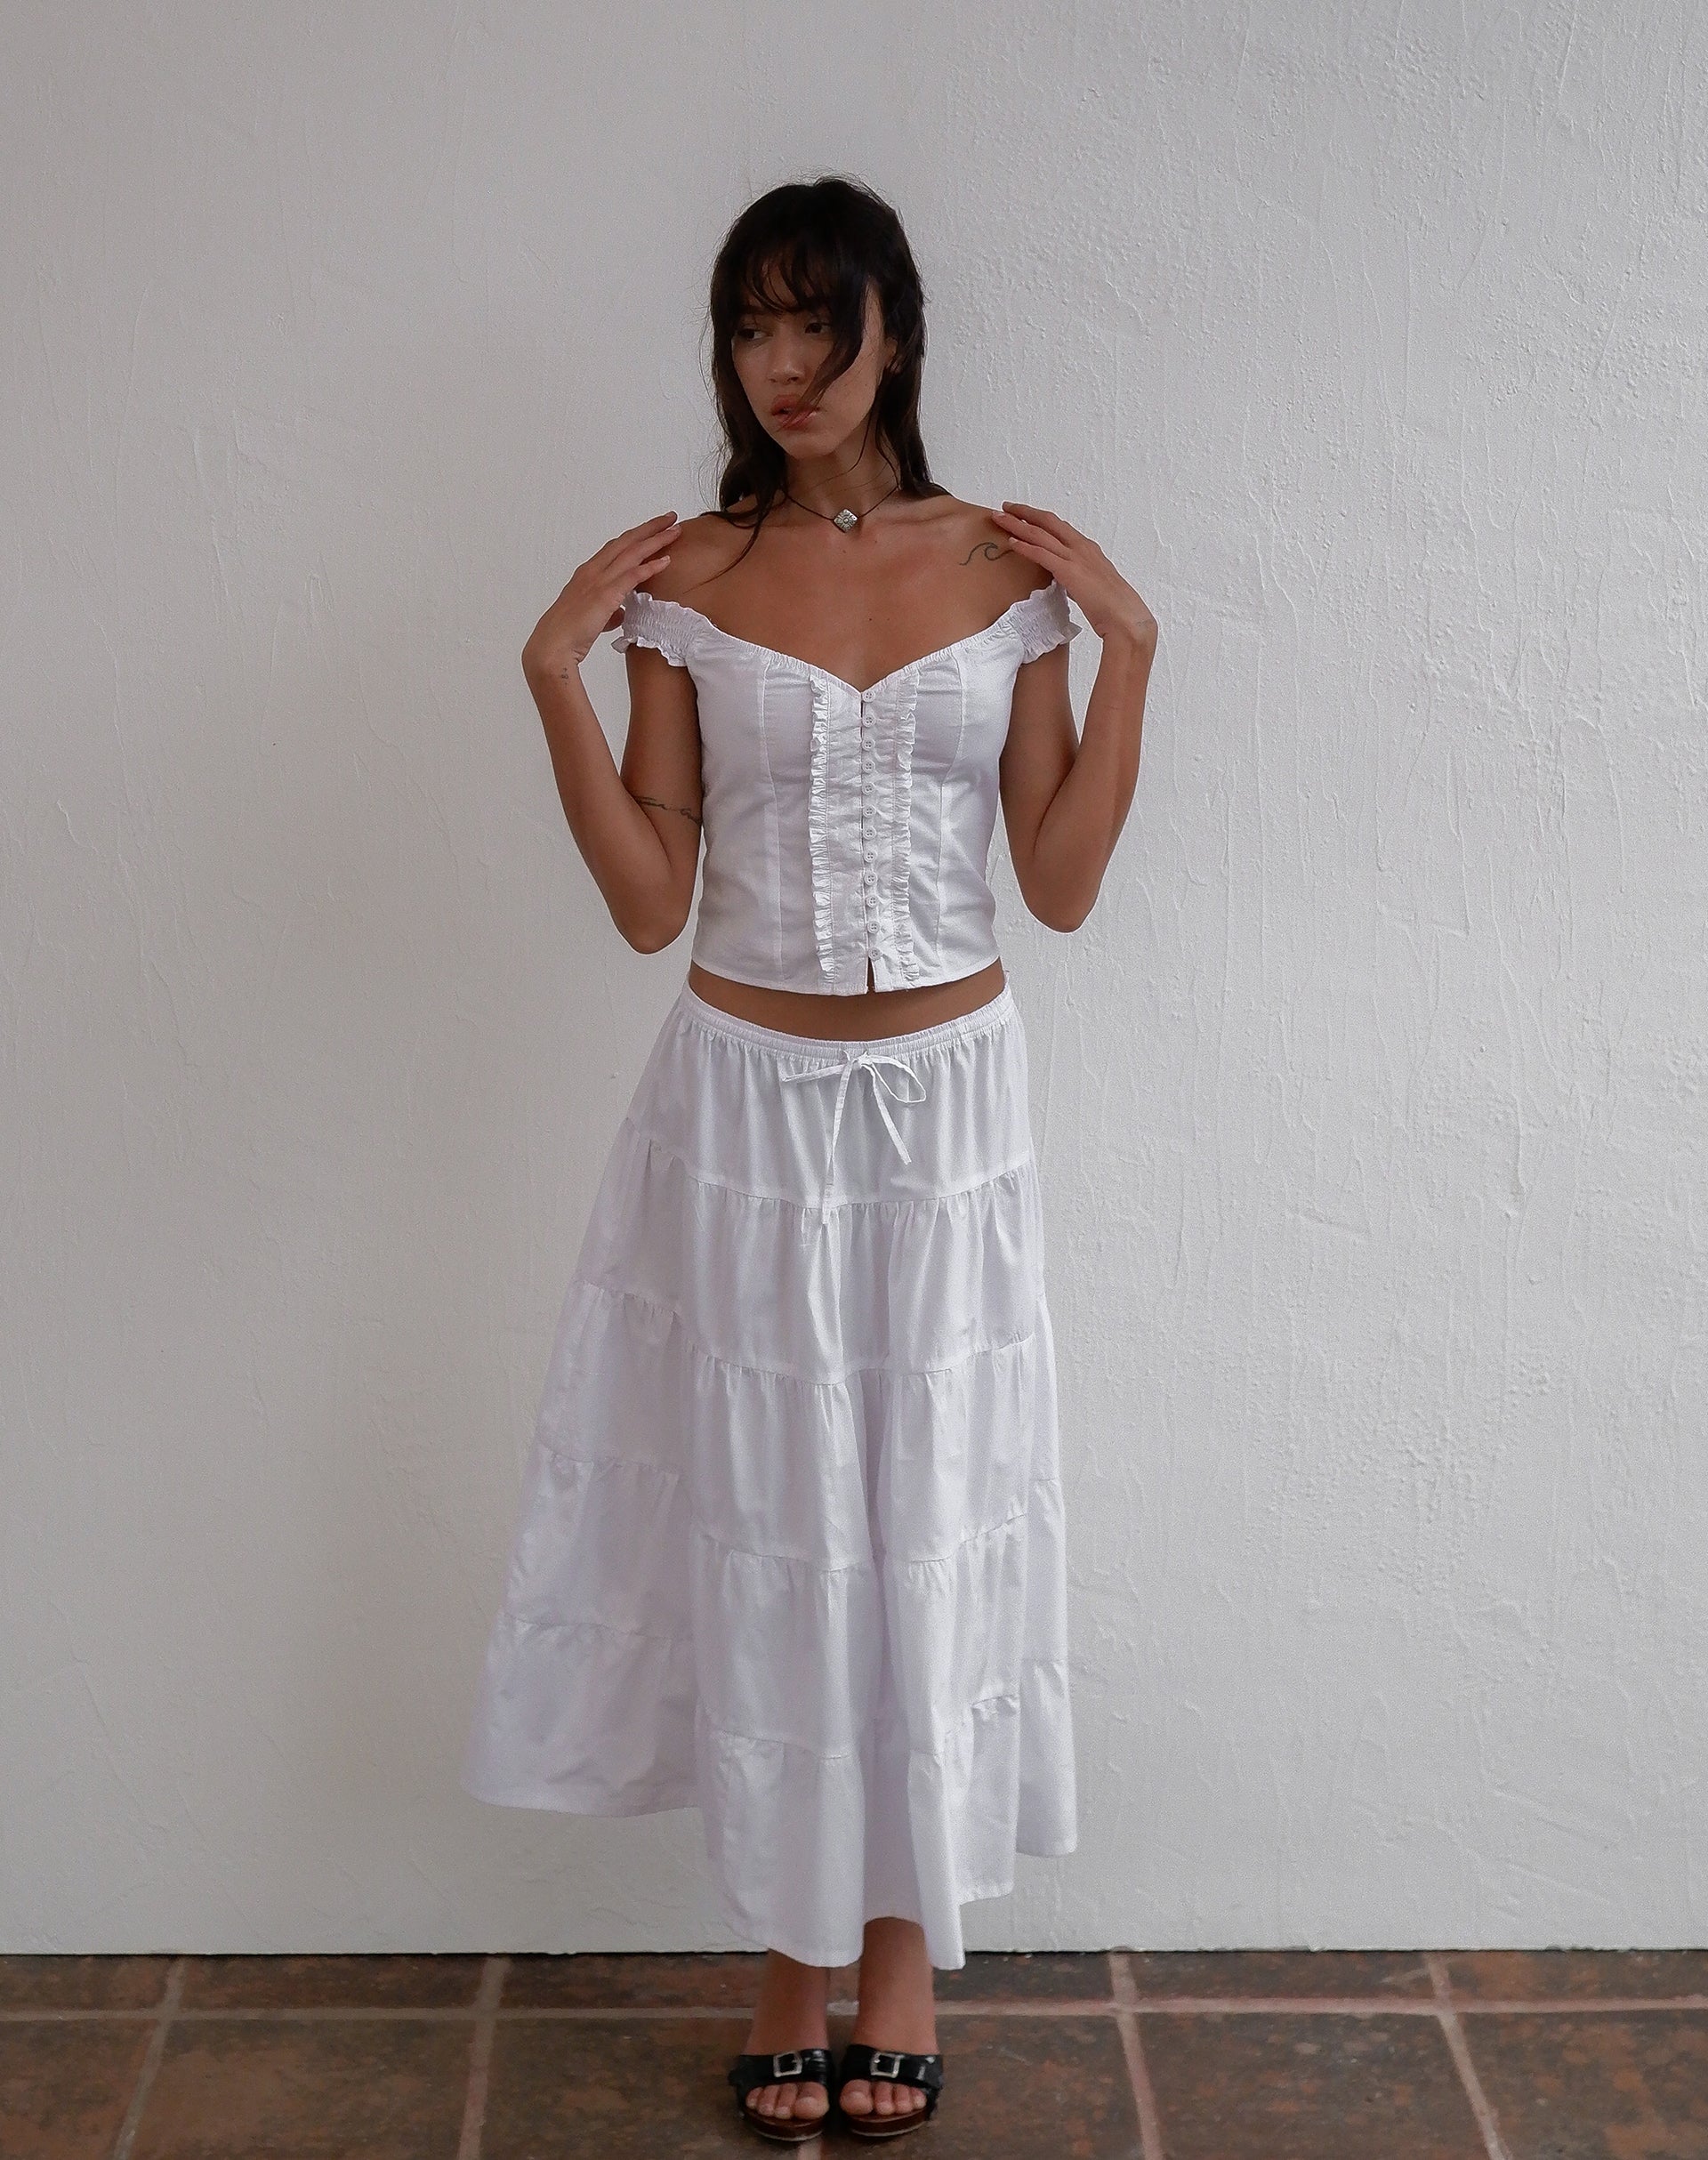 Image of Izumi Tiered Midi Skirt in Poplin White